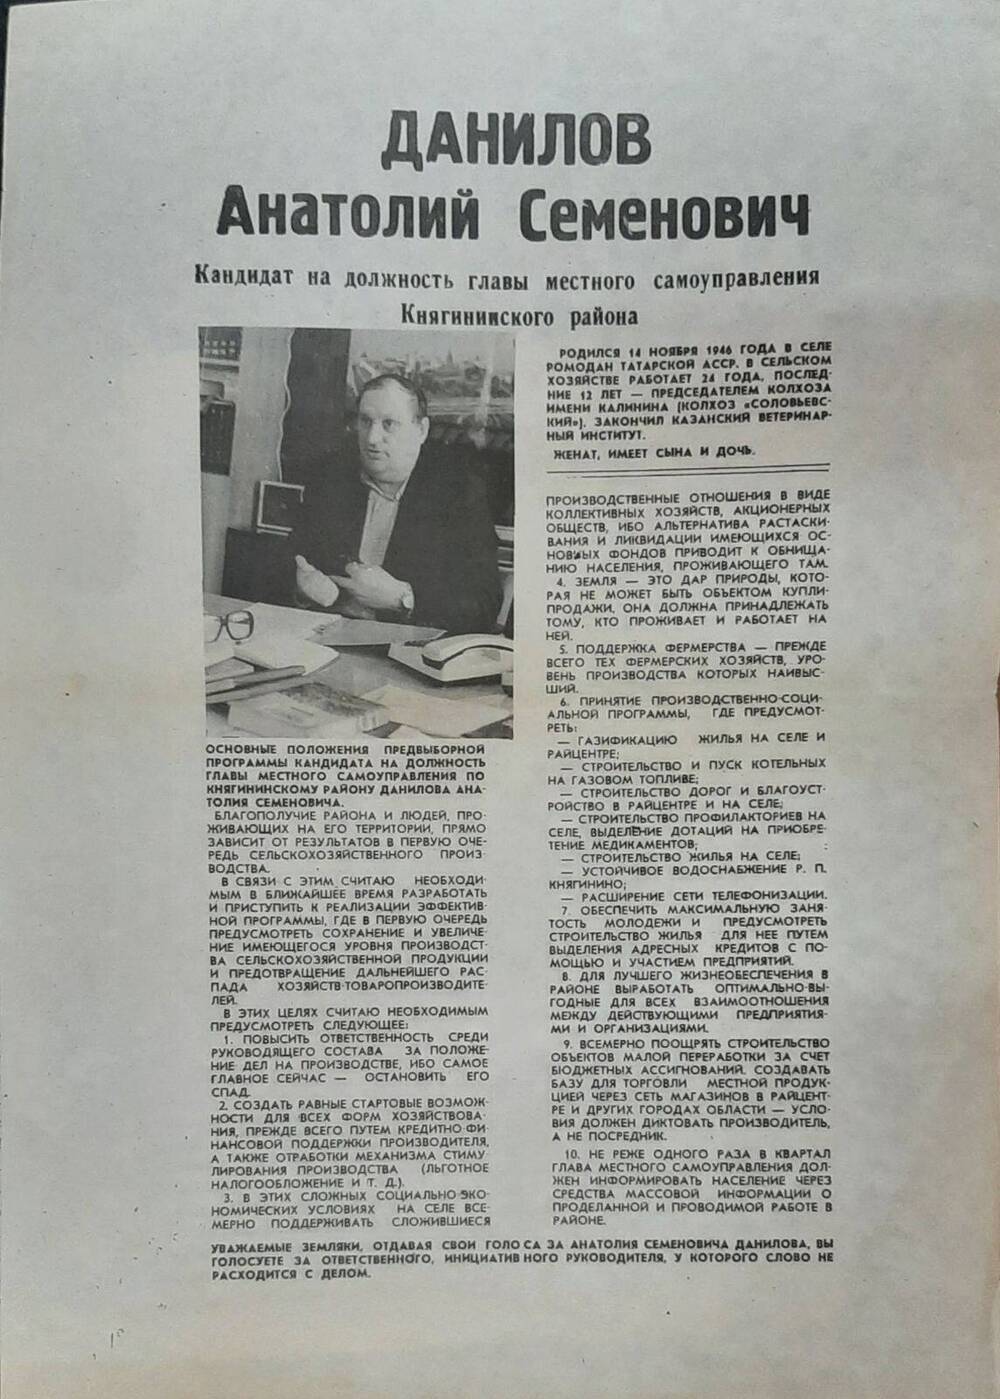 Плакат агитационный кандидата в главы местного самоуправления Данилова А.С. на выборах в марте 1994 г.